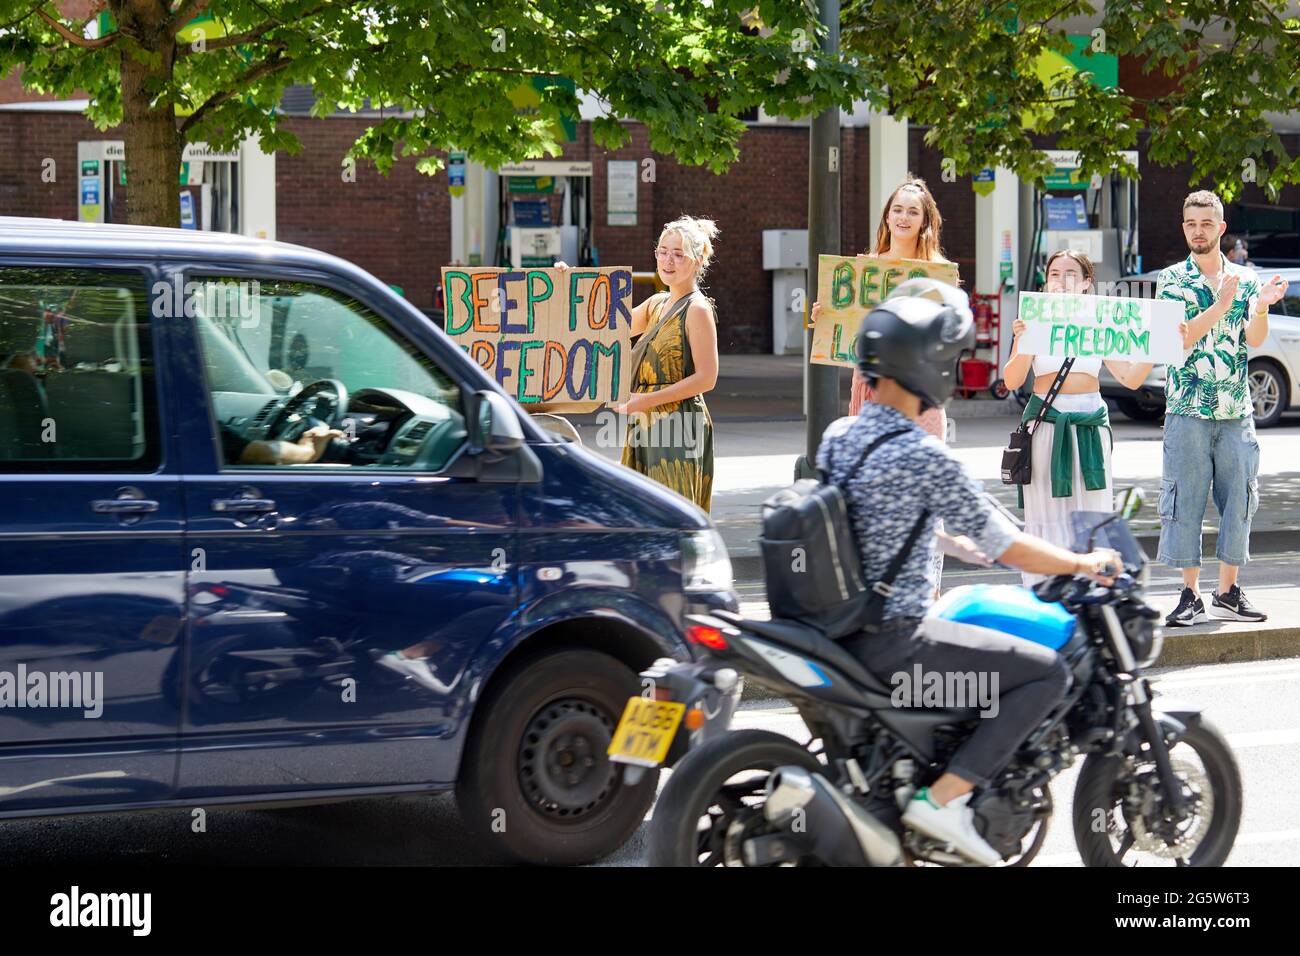 Londres, Reino Unido - 15 de junio de 2021: Los manifestantes del amoroso campo anti-encierro en Shepherds Bush Green ganan apoyo para su causa de los motoristas que pasan. Foto de stock